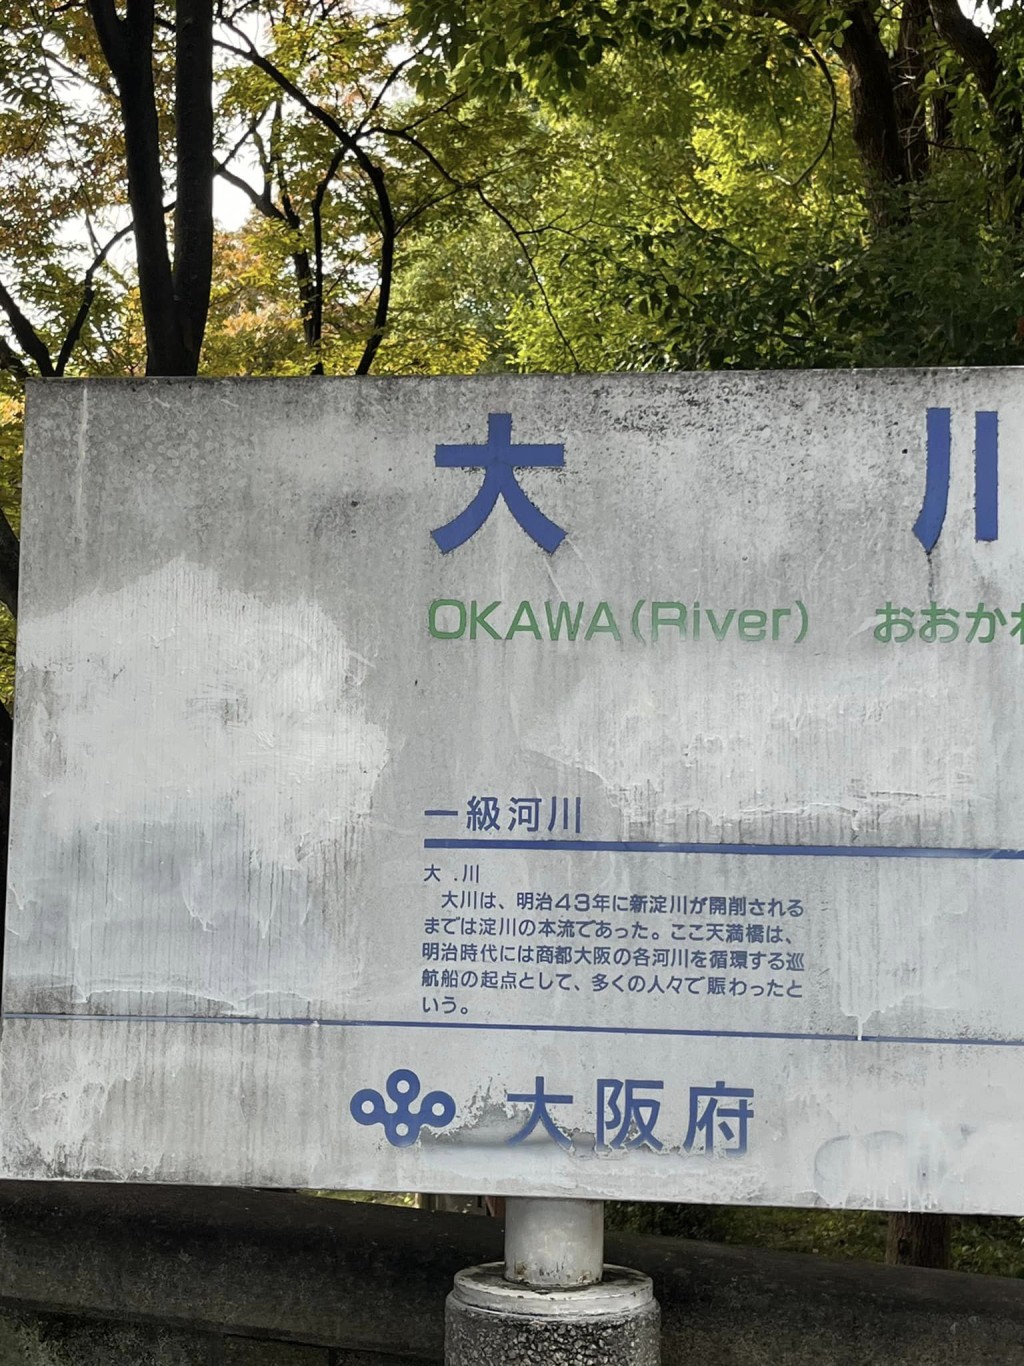 大阪的河流、土坏及地下水，疑受到PFOA污染。FB